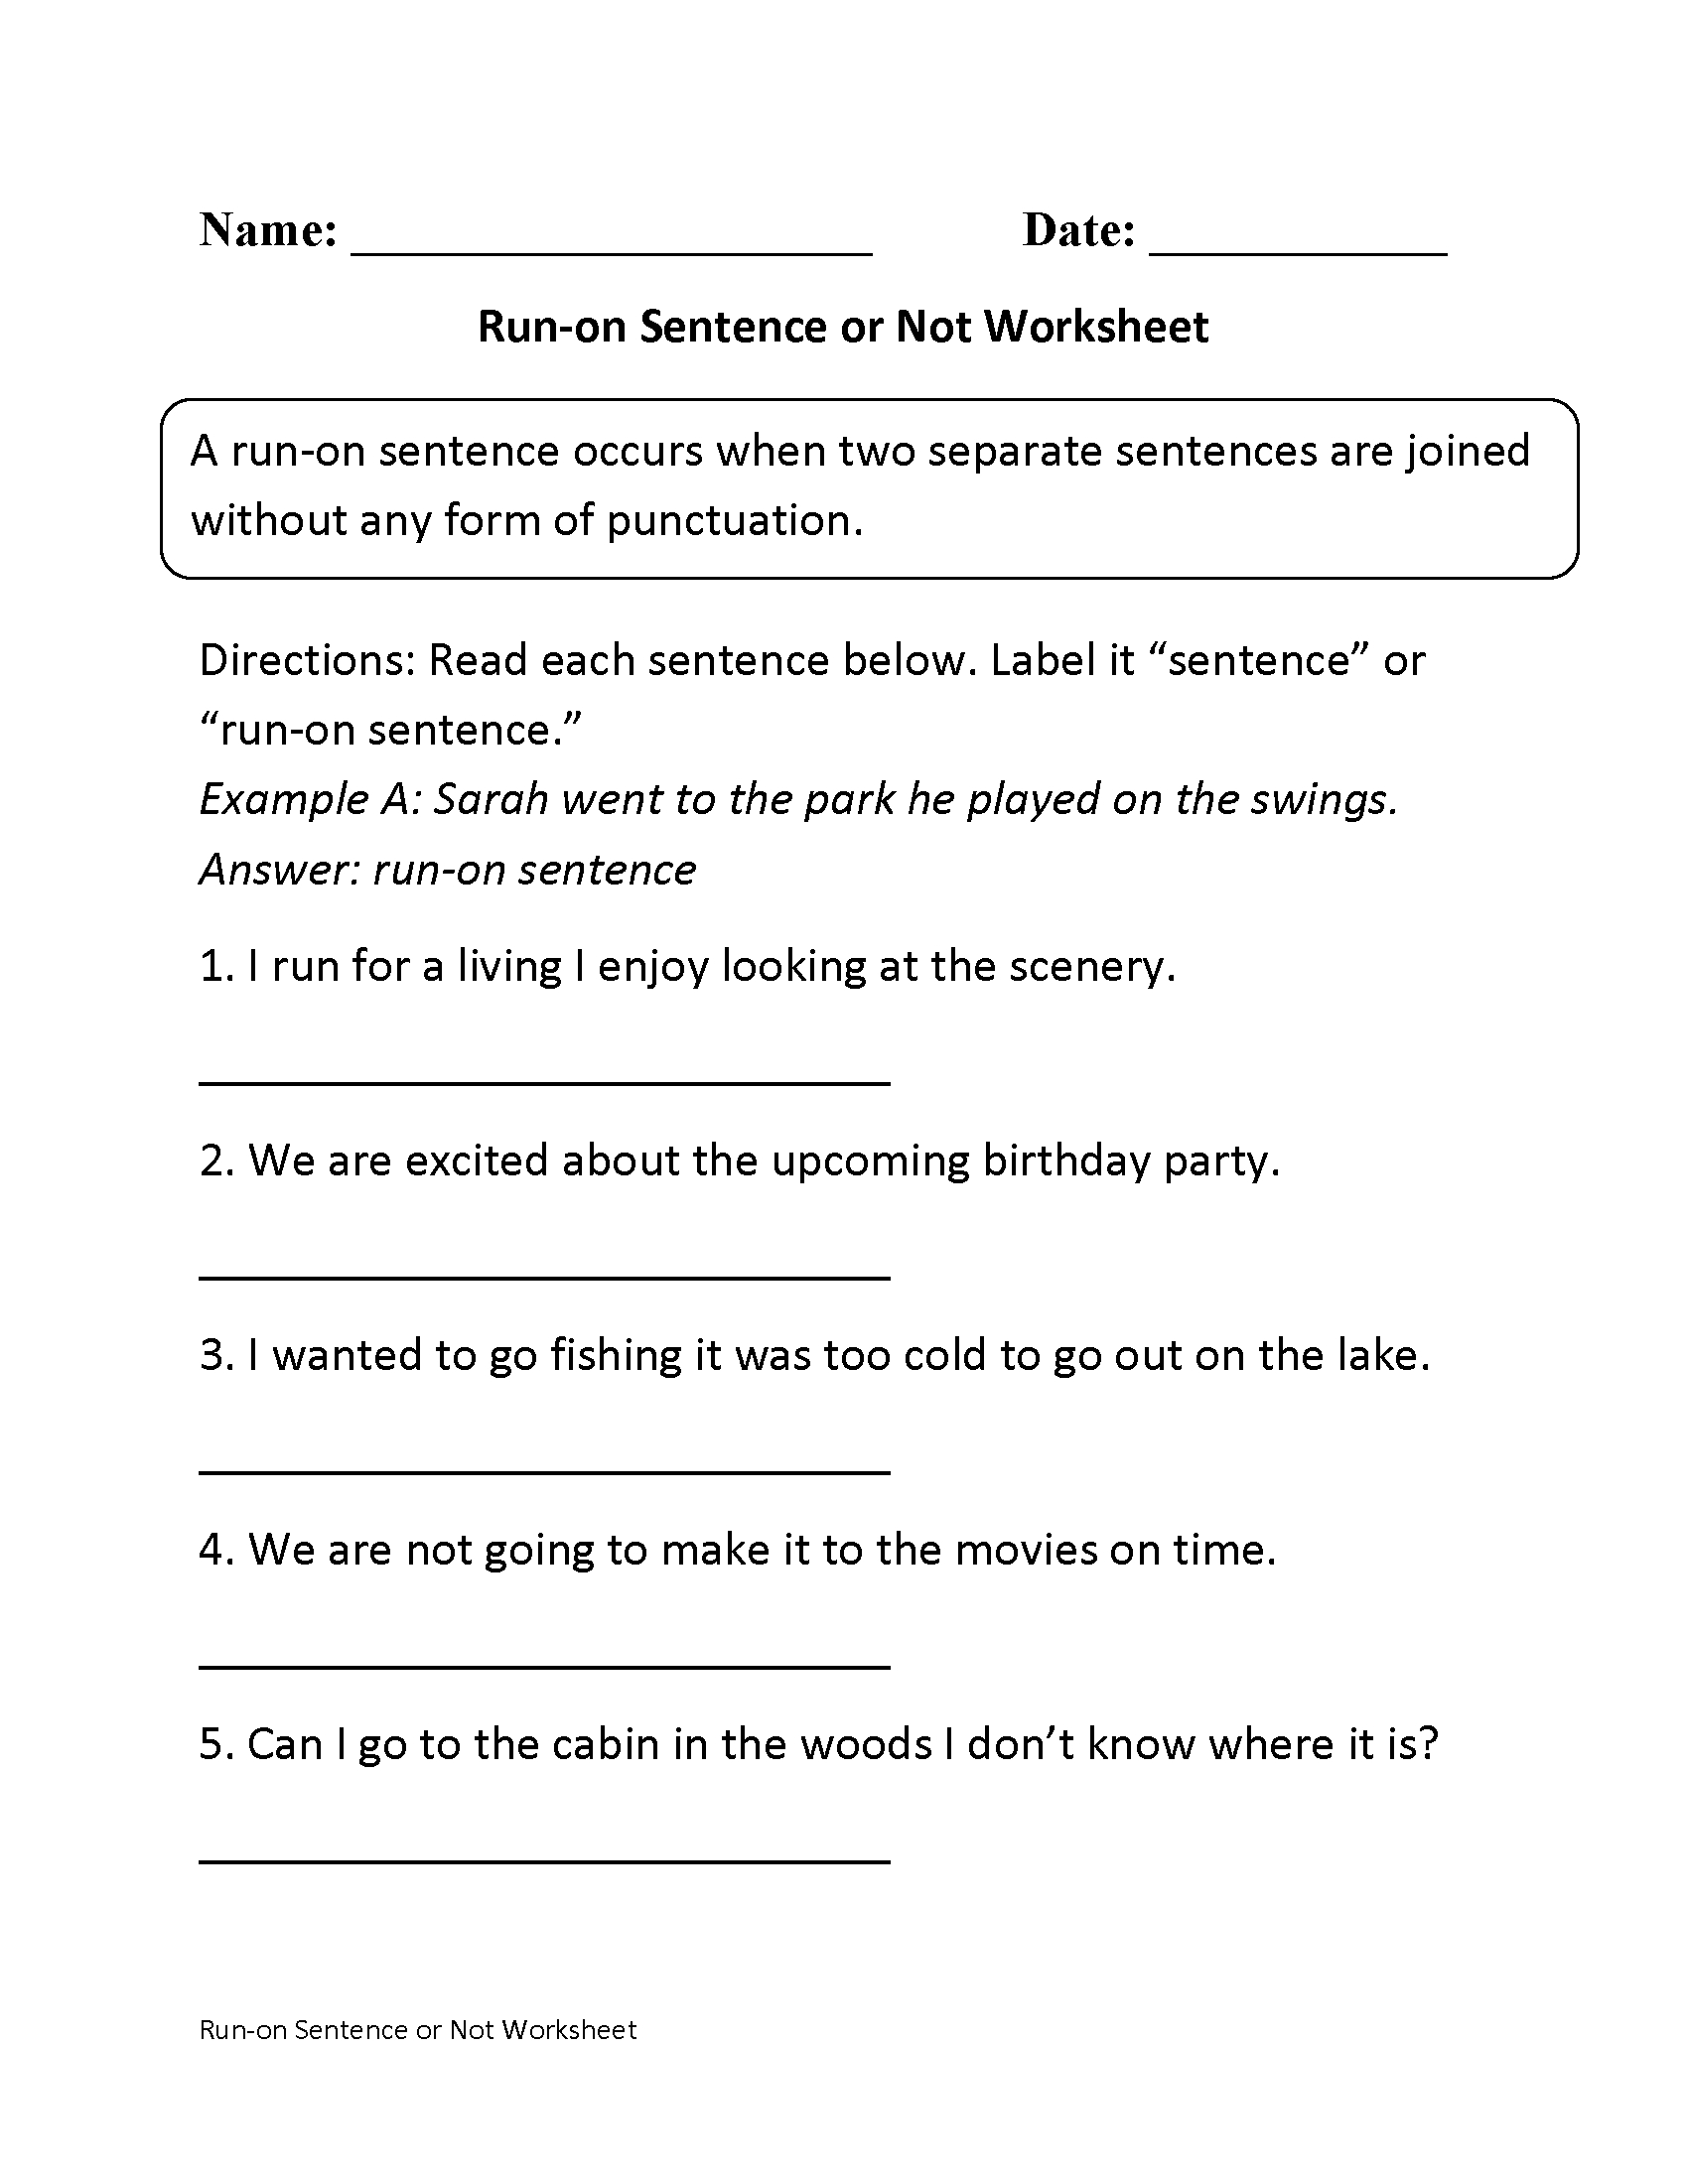 Free Printable Worksheets On Run On Sentences Lexia s Blog